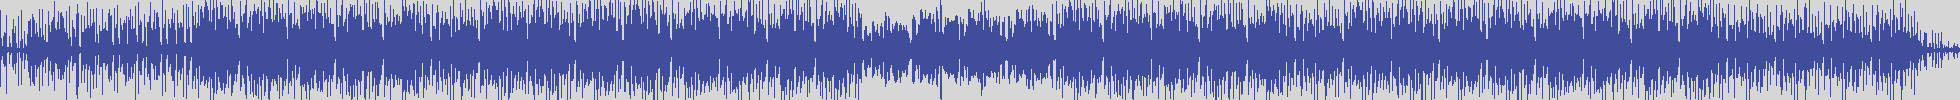 noclouds_chillout [NOC142] Vibrant Boy - Olpu [Original Mix] audio wave form